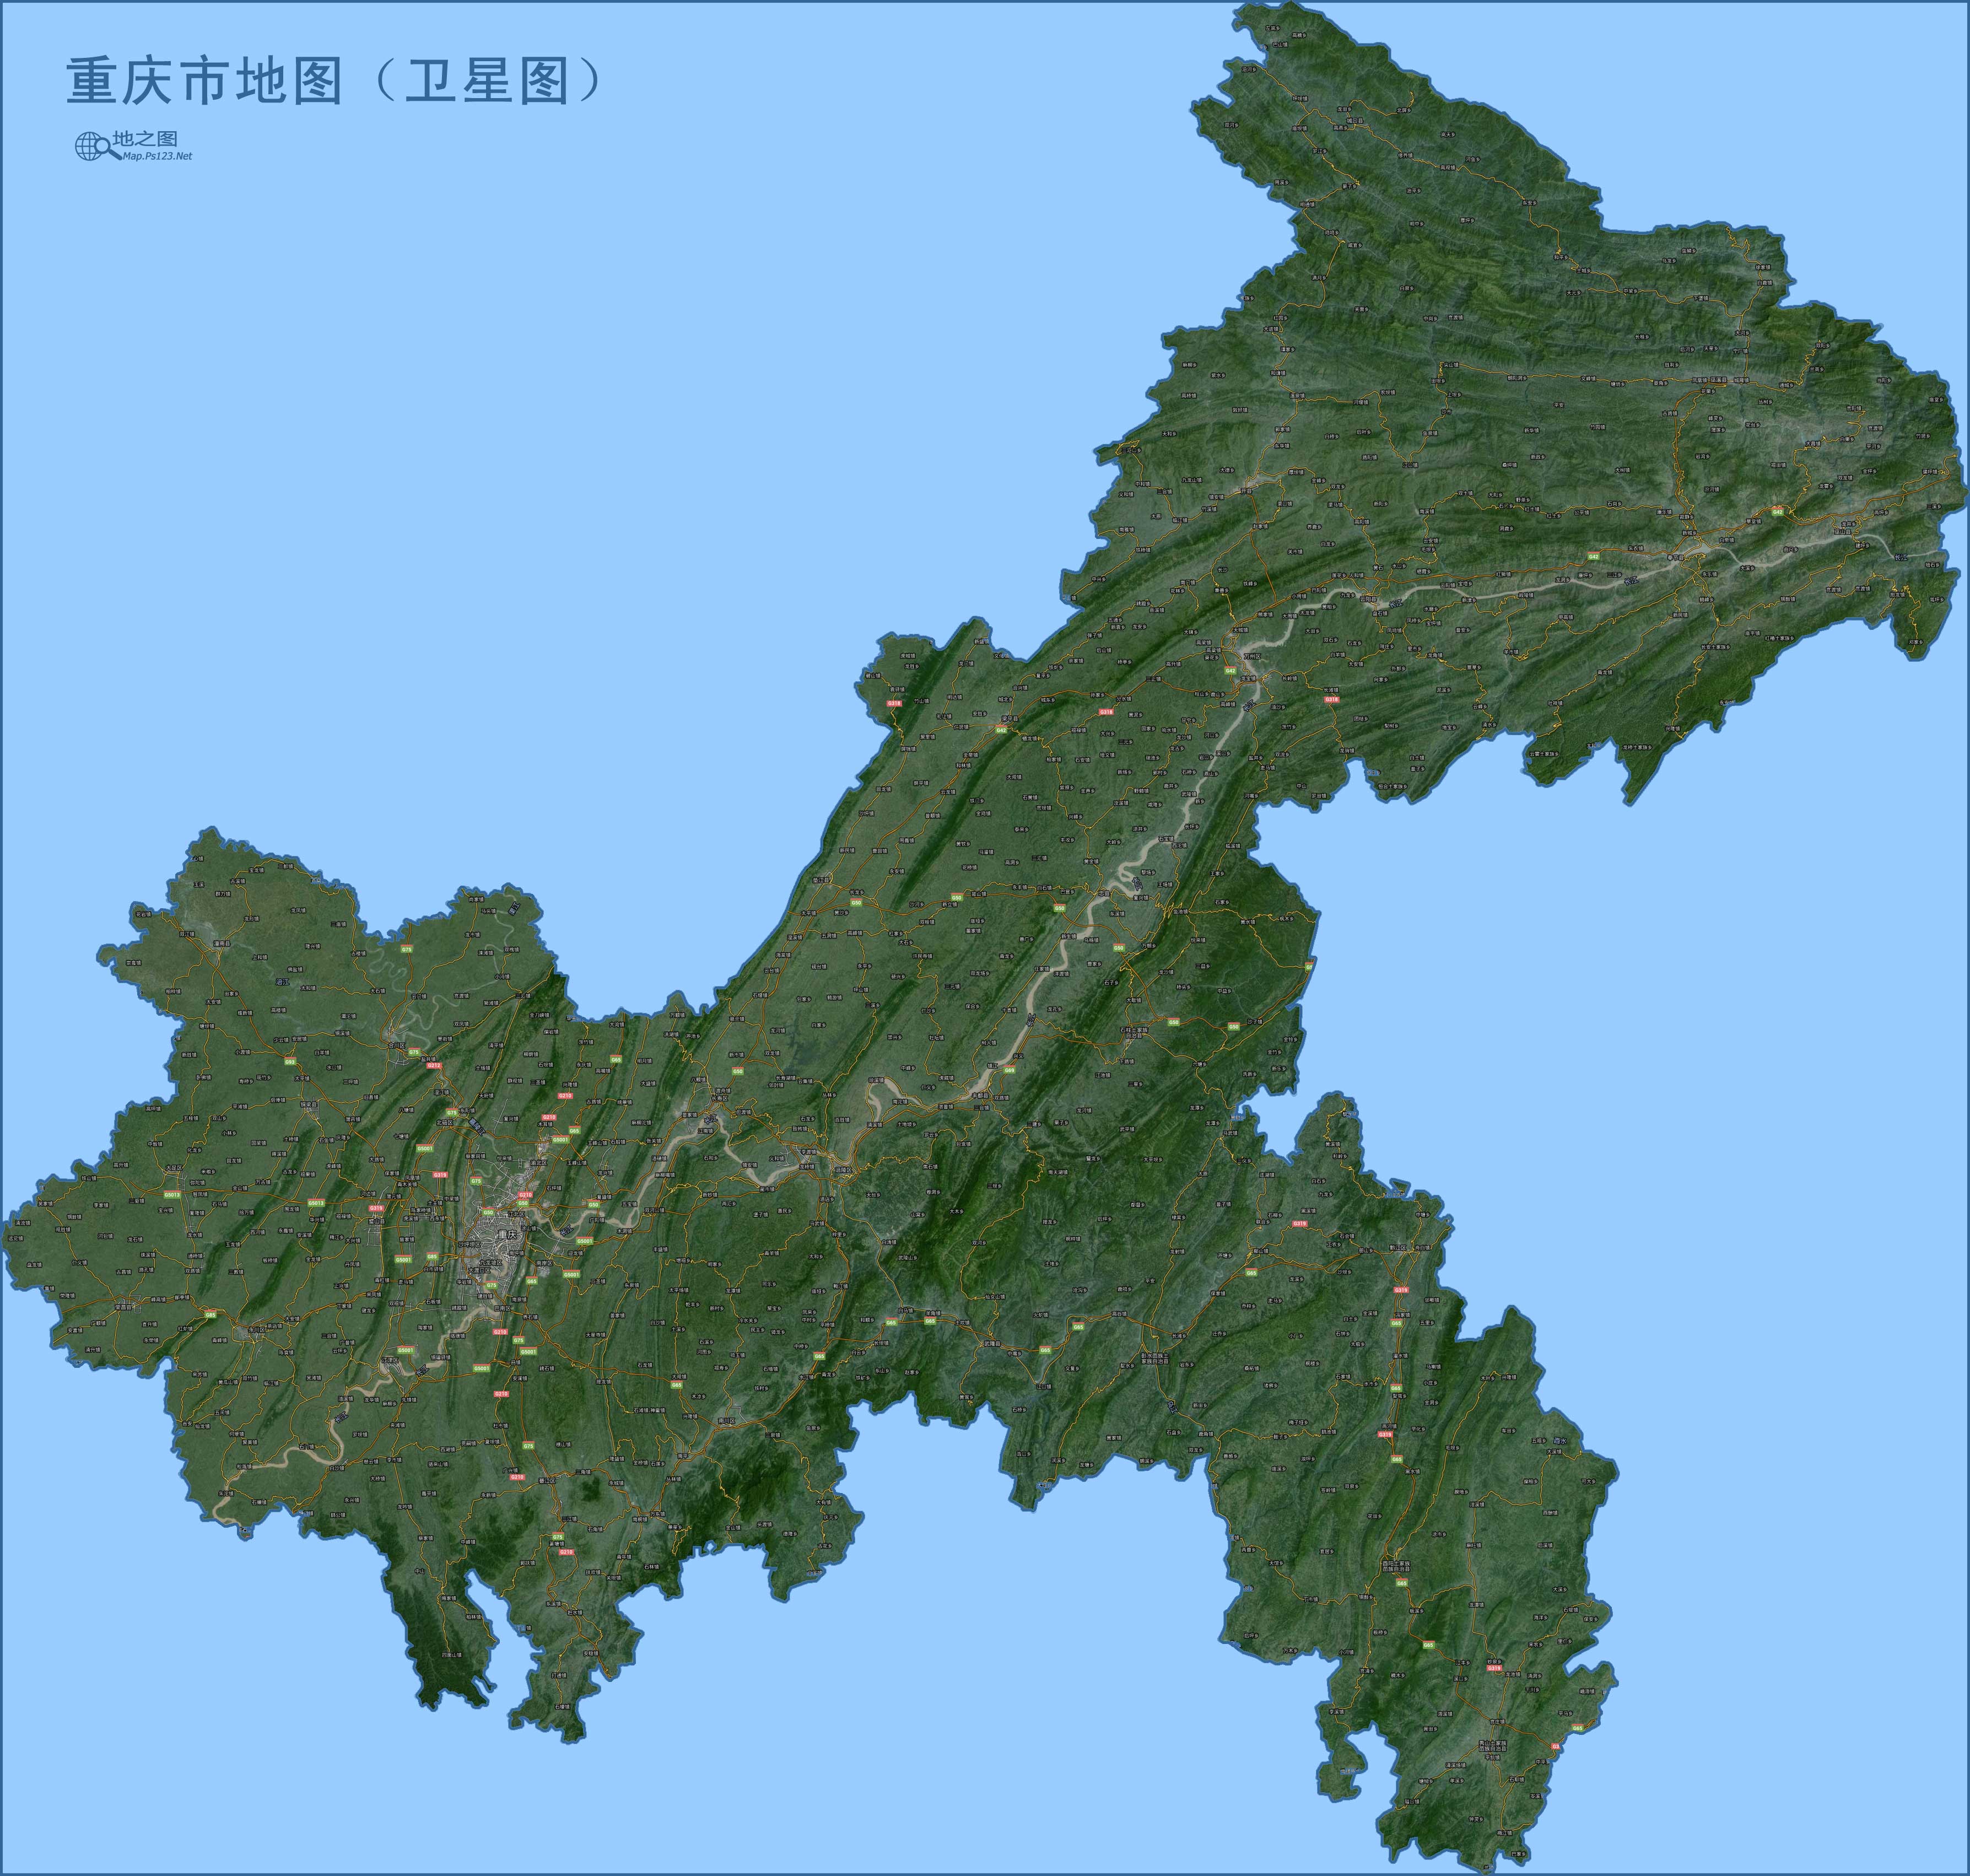 上一幅地图: 重庆市乡镇分界图 | 重庆 | 下一幅地图: 重庆地图(地形